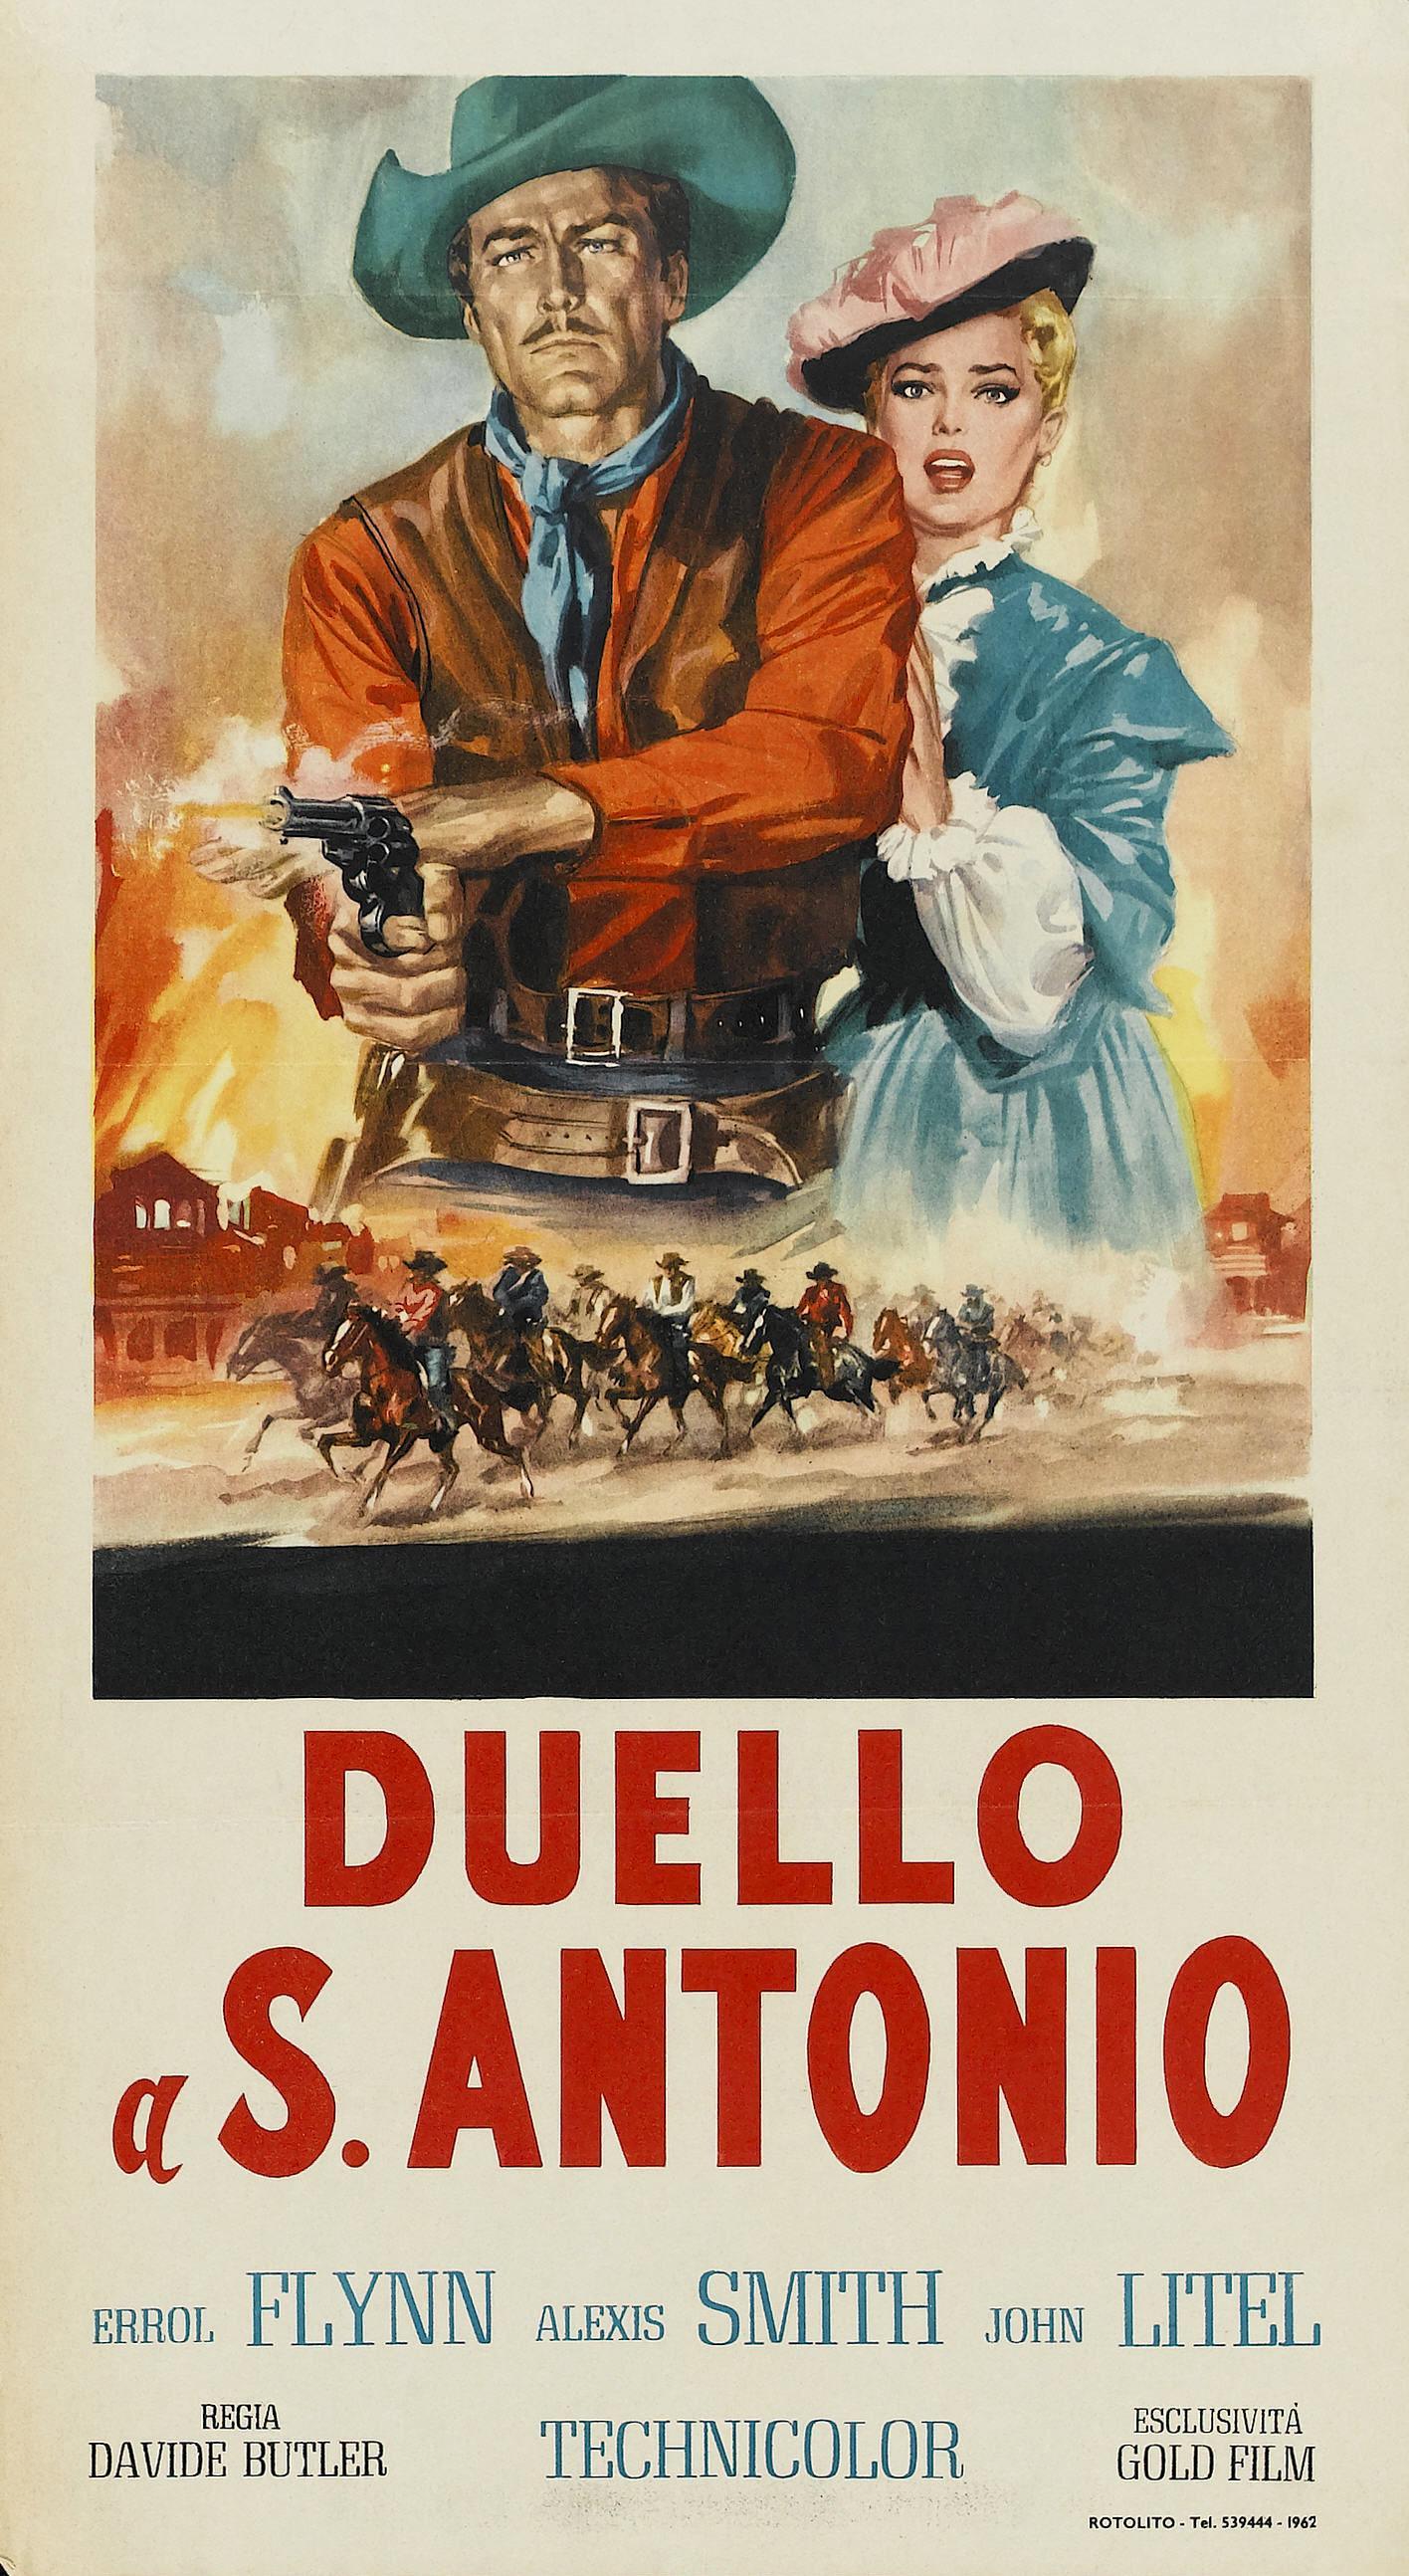 Постер фильма San Antonio